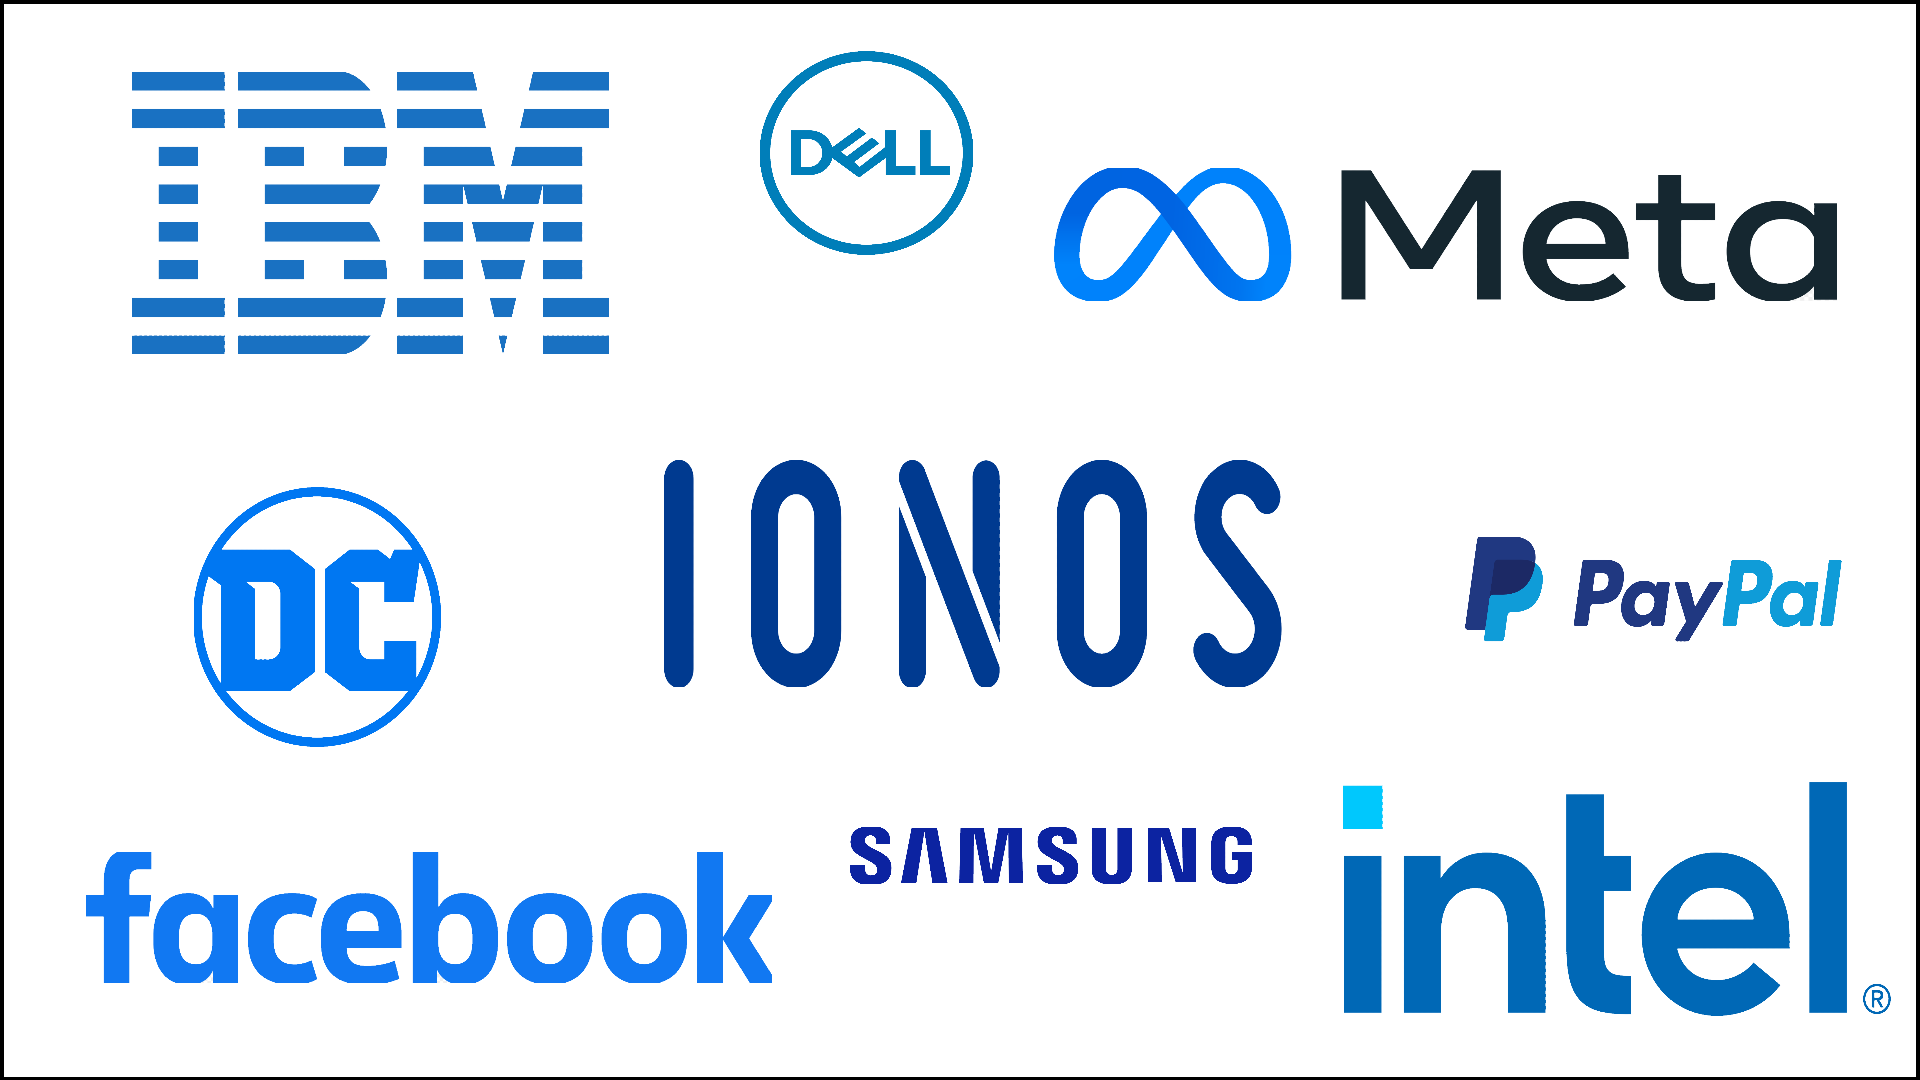 Sampling of blue logos